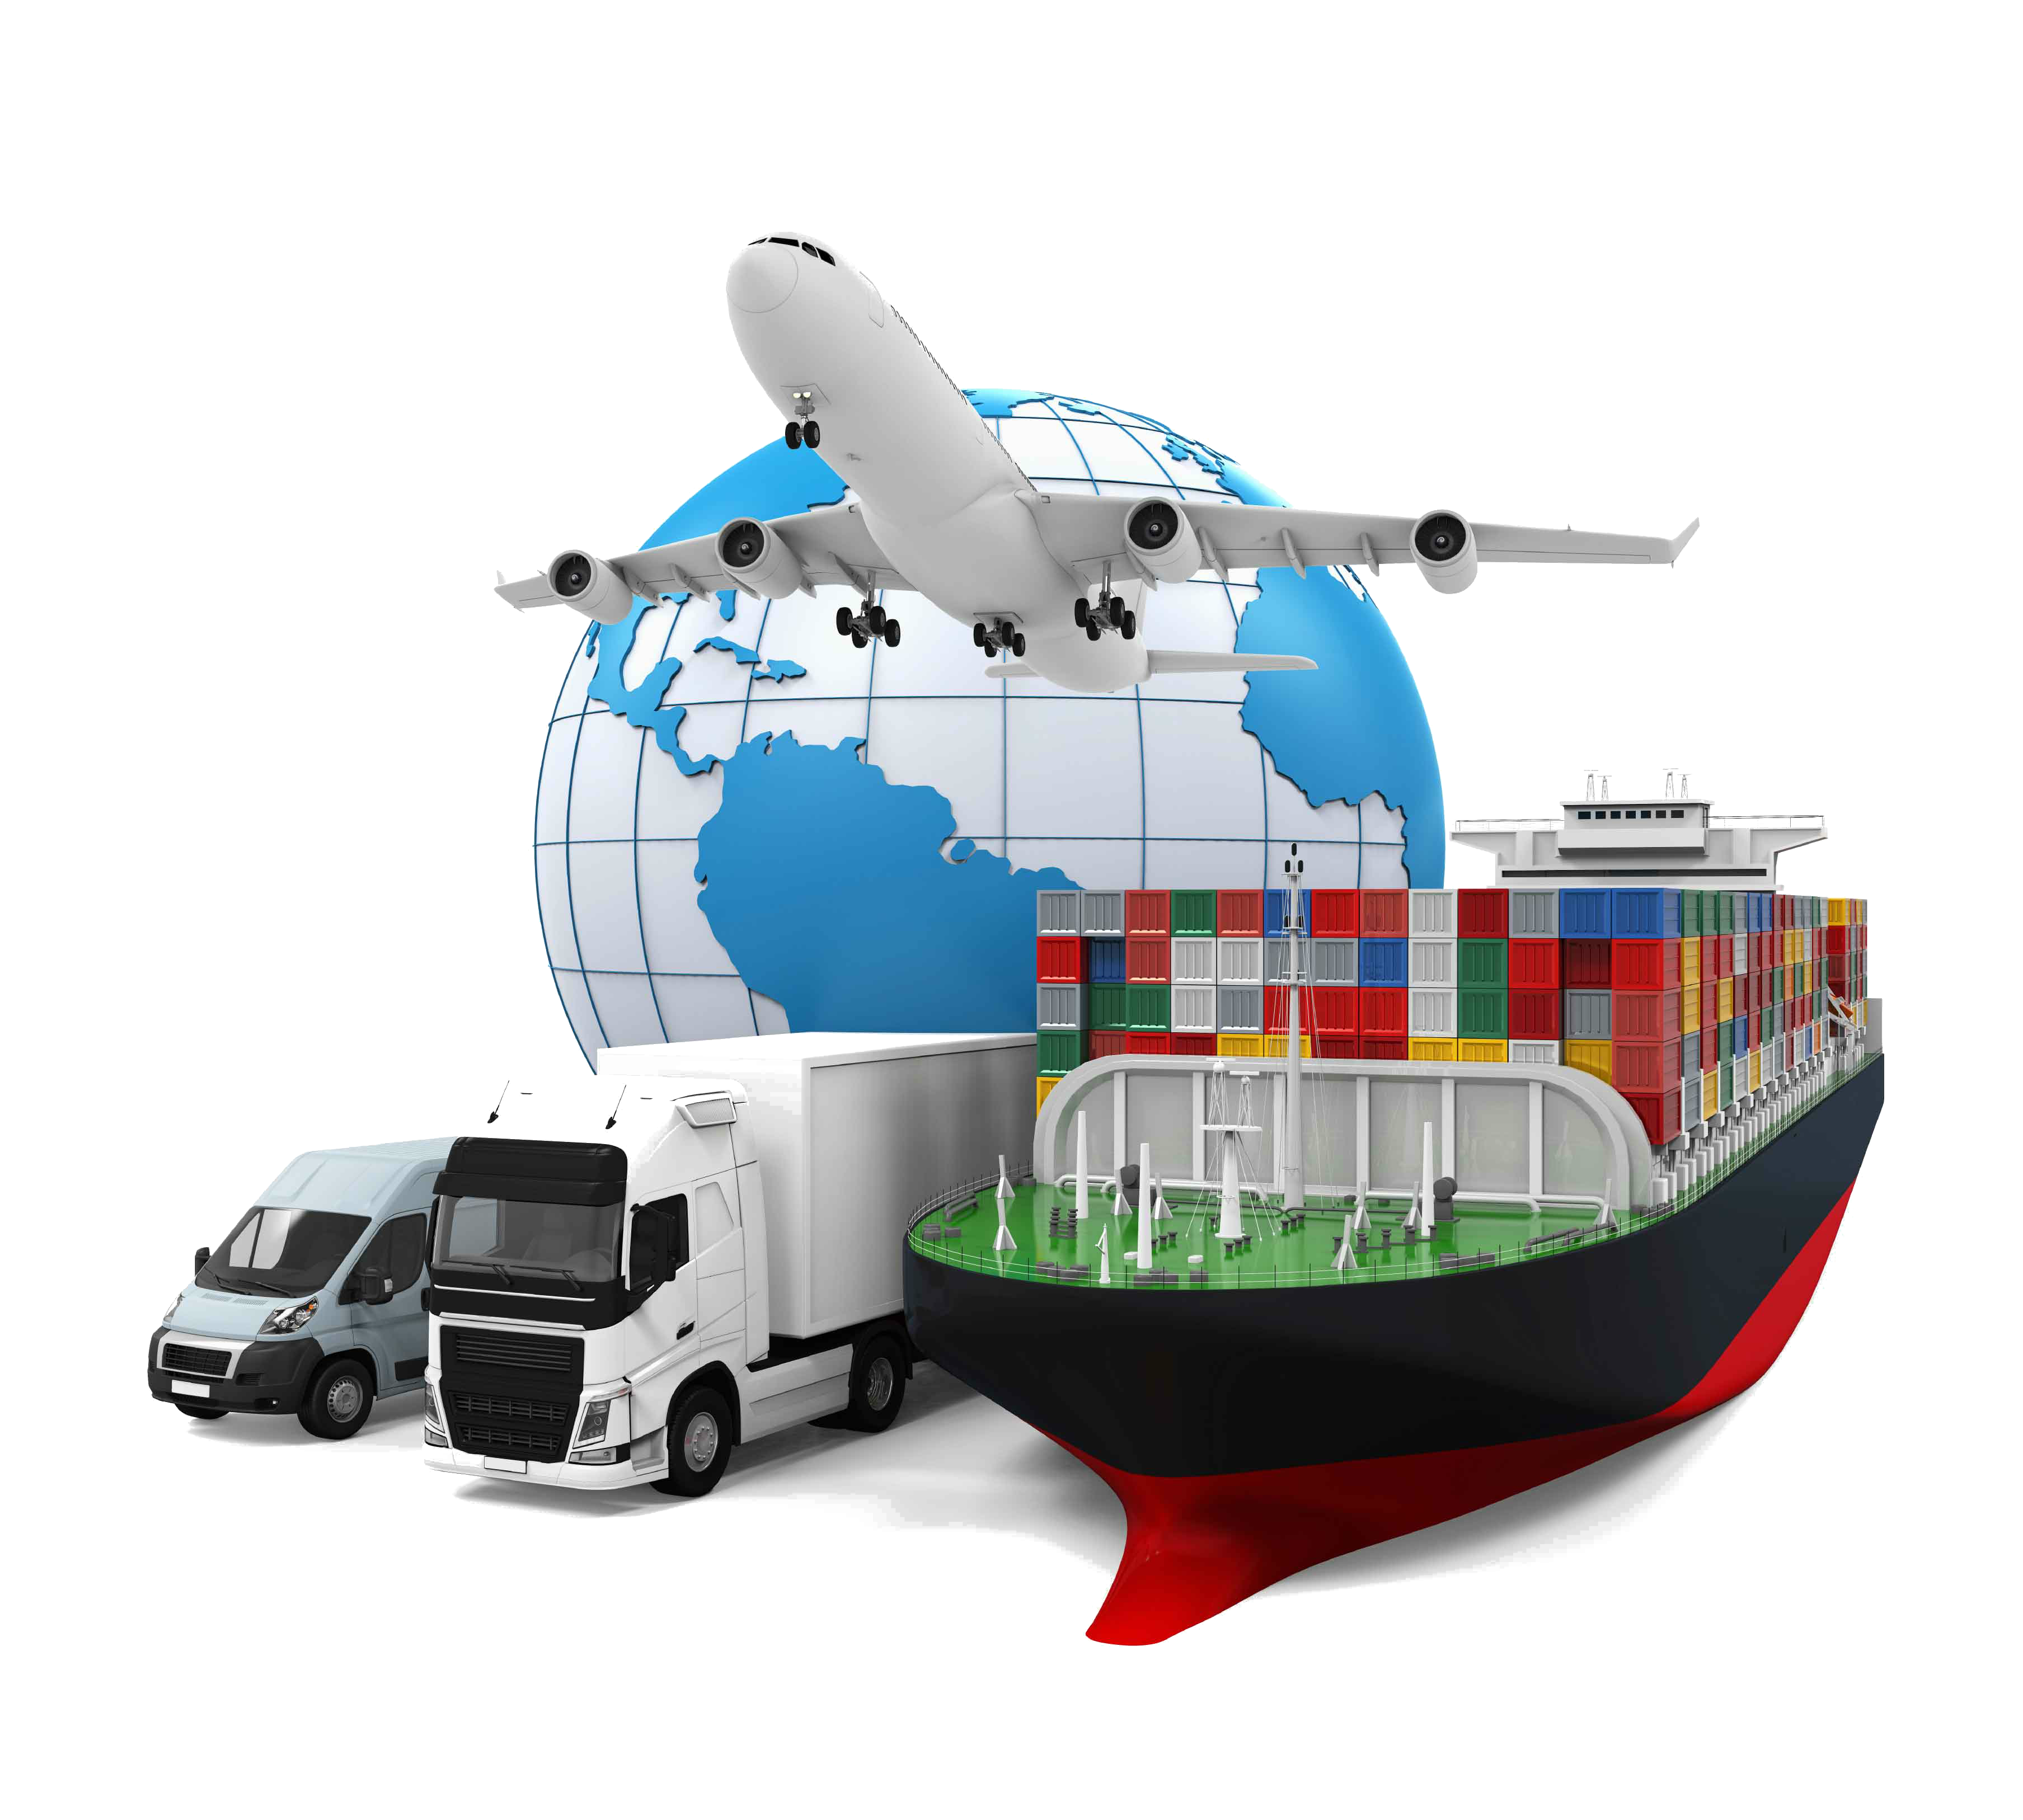 transportes: barco, avion, camion. Operaciones logisticas por aire, tierra y mar.